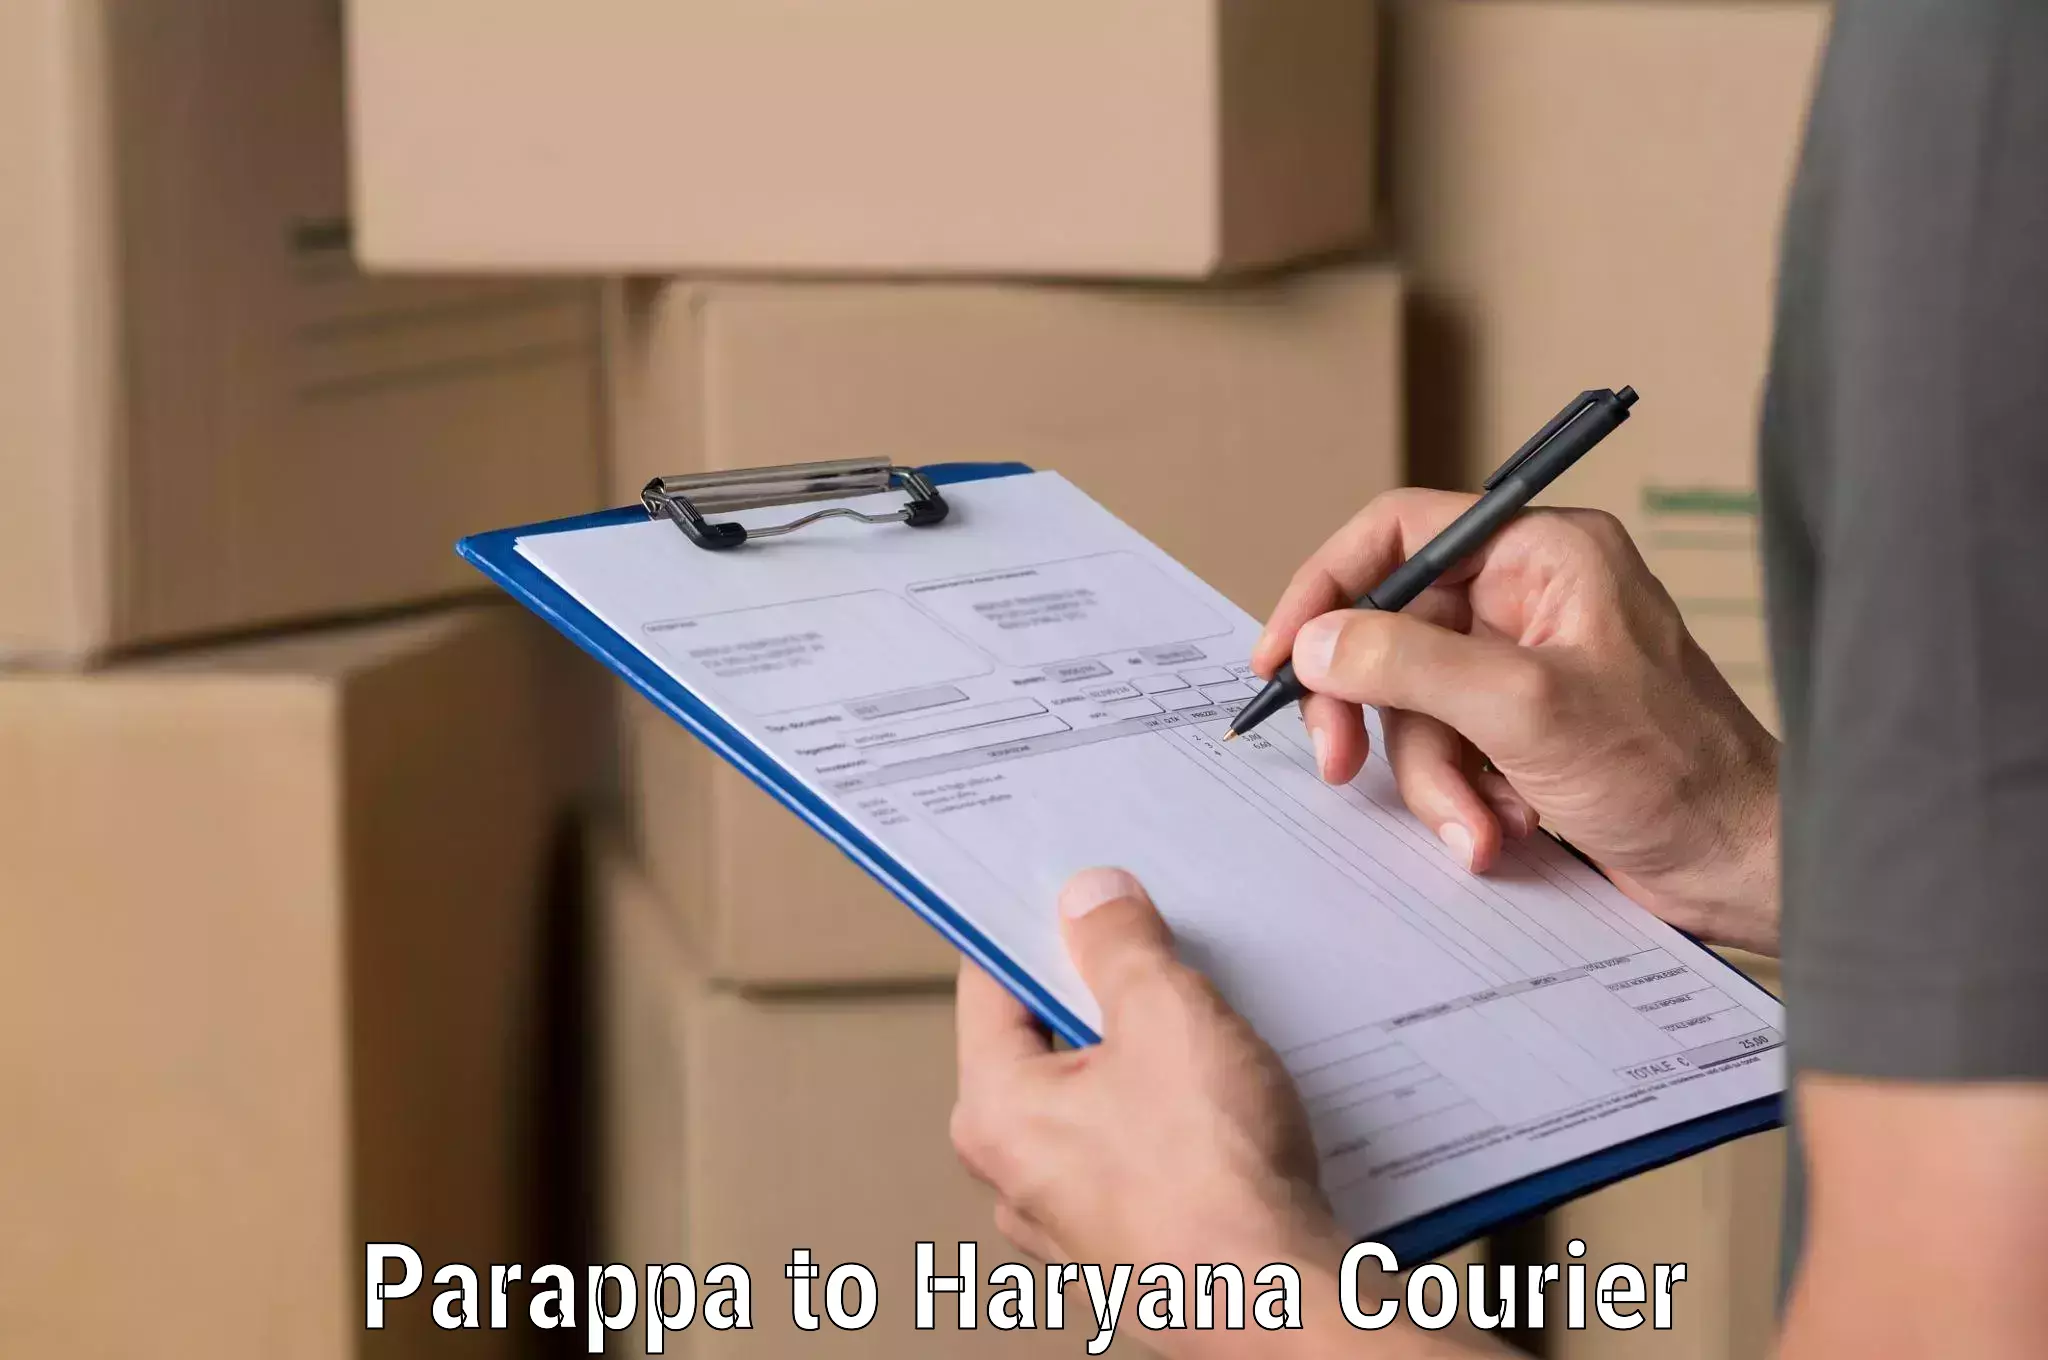 Digital courier platforms Parappa to Gohana